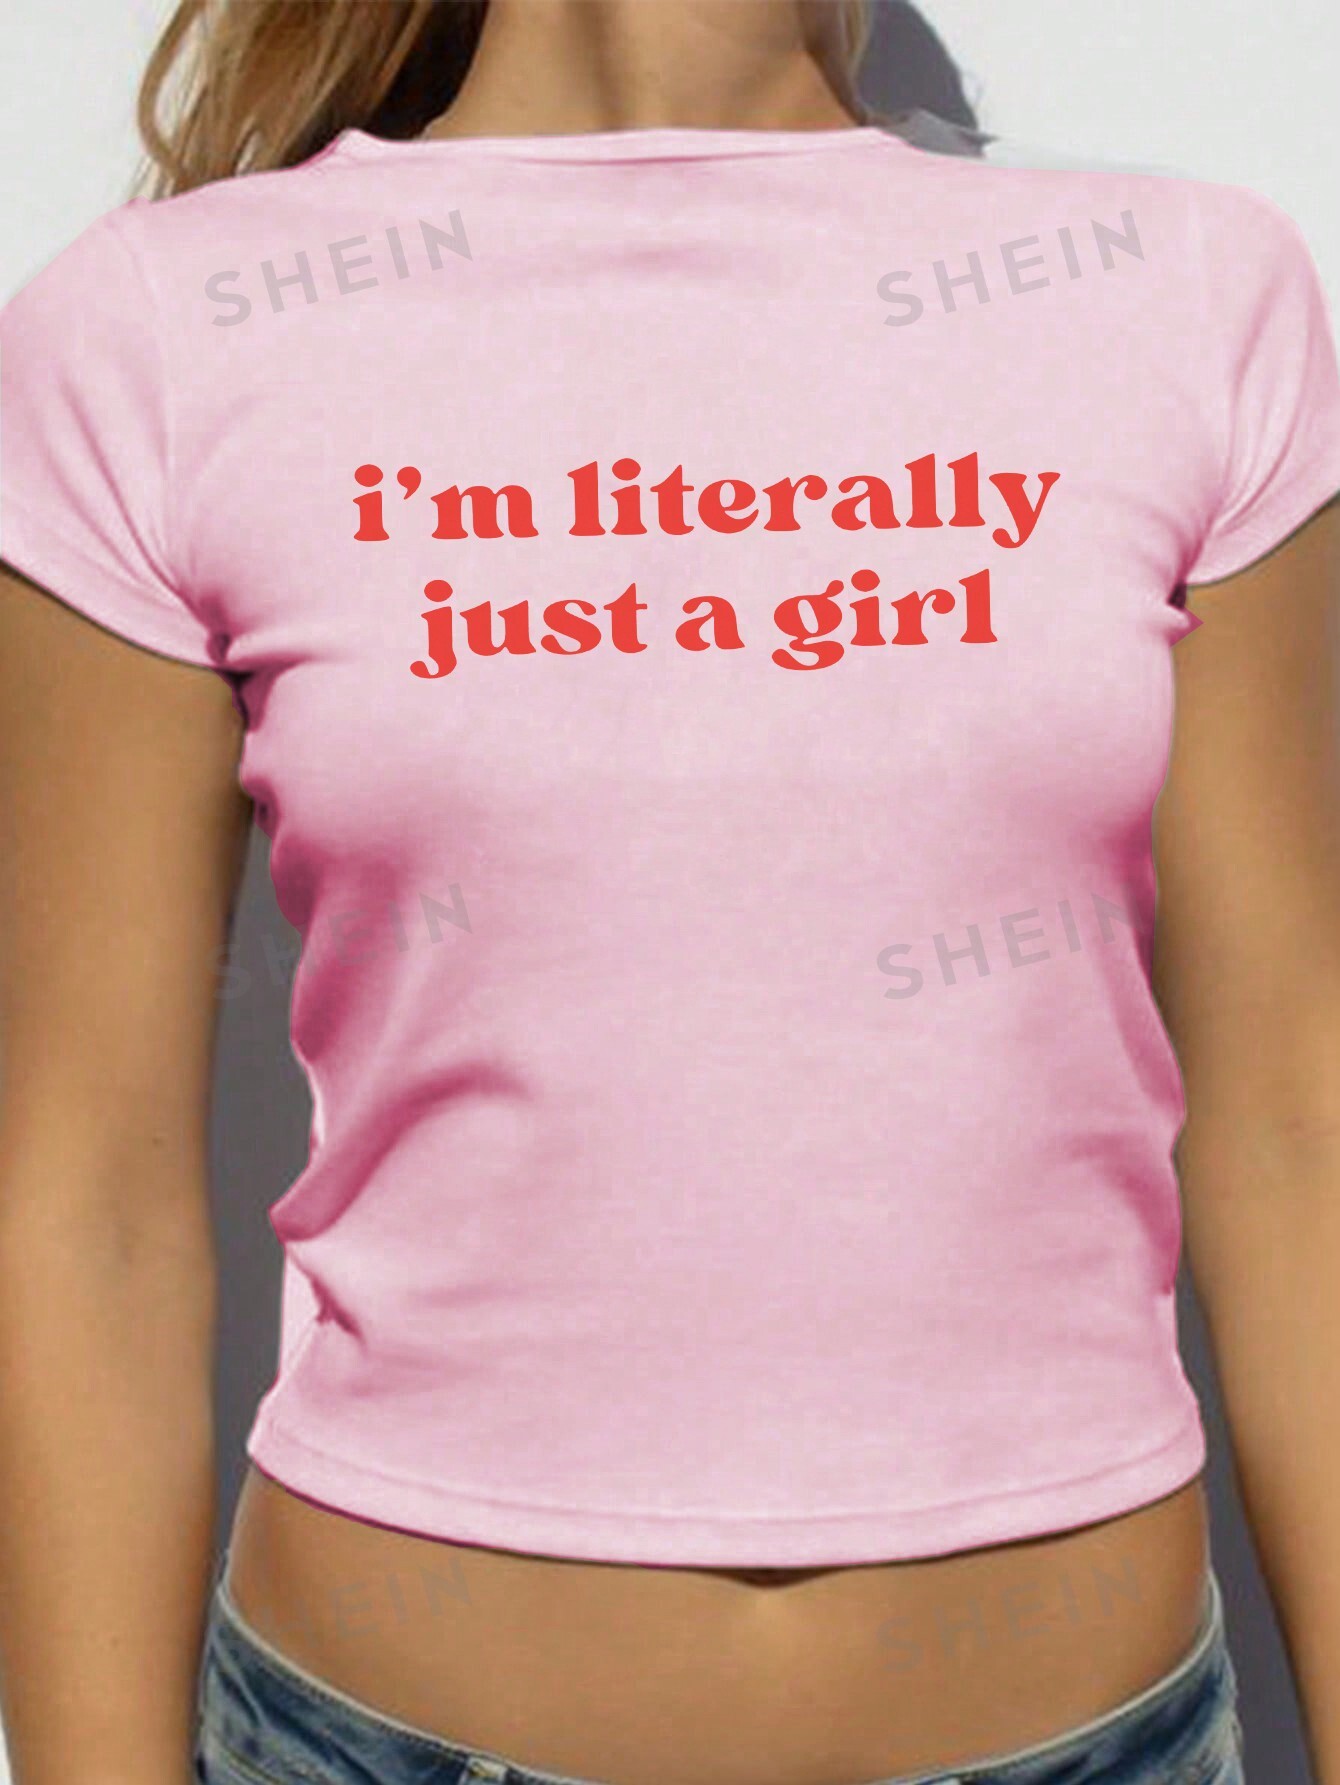 Женская футболка Y2k с коротким рукавом и принтом слогана, розовый футболка mingliusili женская оверсайз с коротким рукавом эстетичный рисунок винтажная модная рубашка в стиле y2k лето 2000